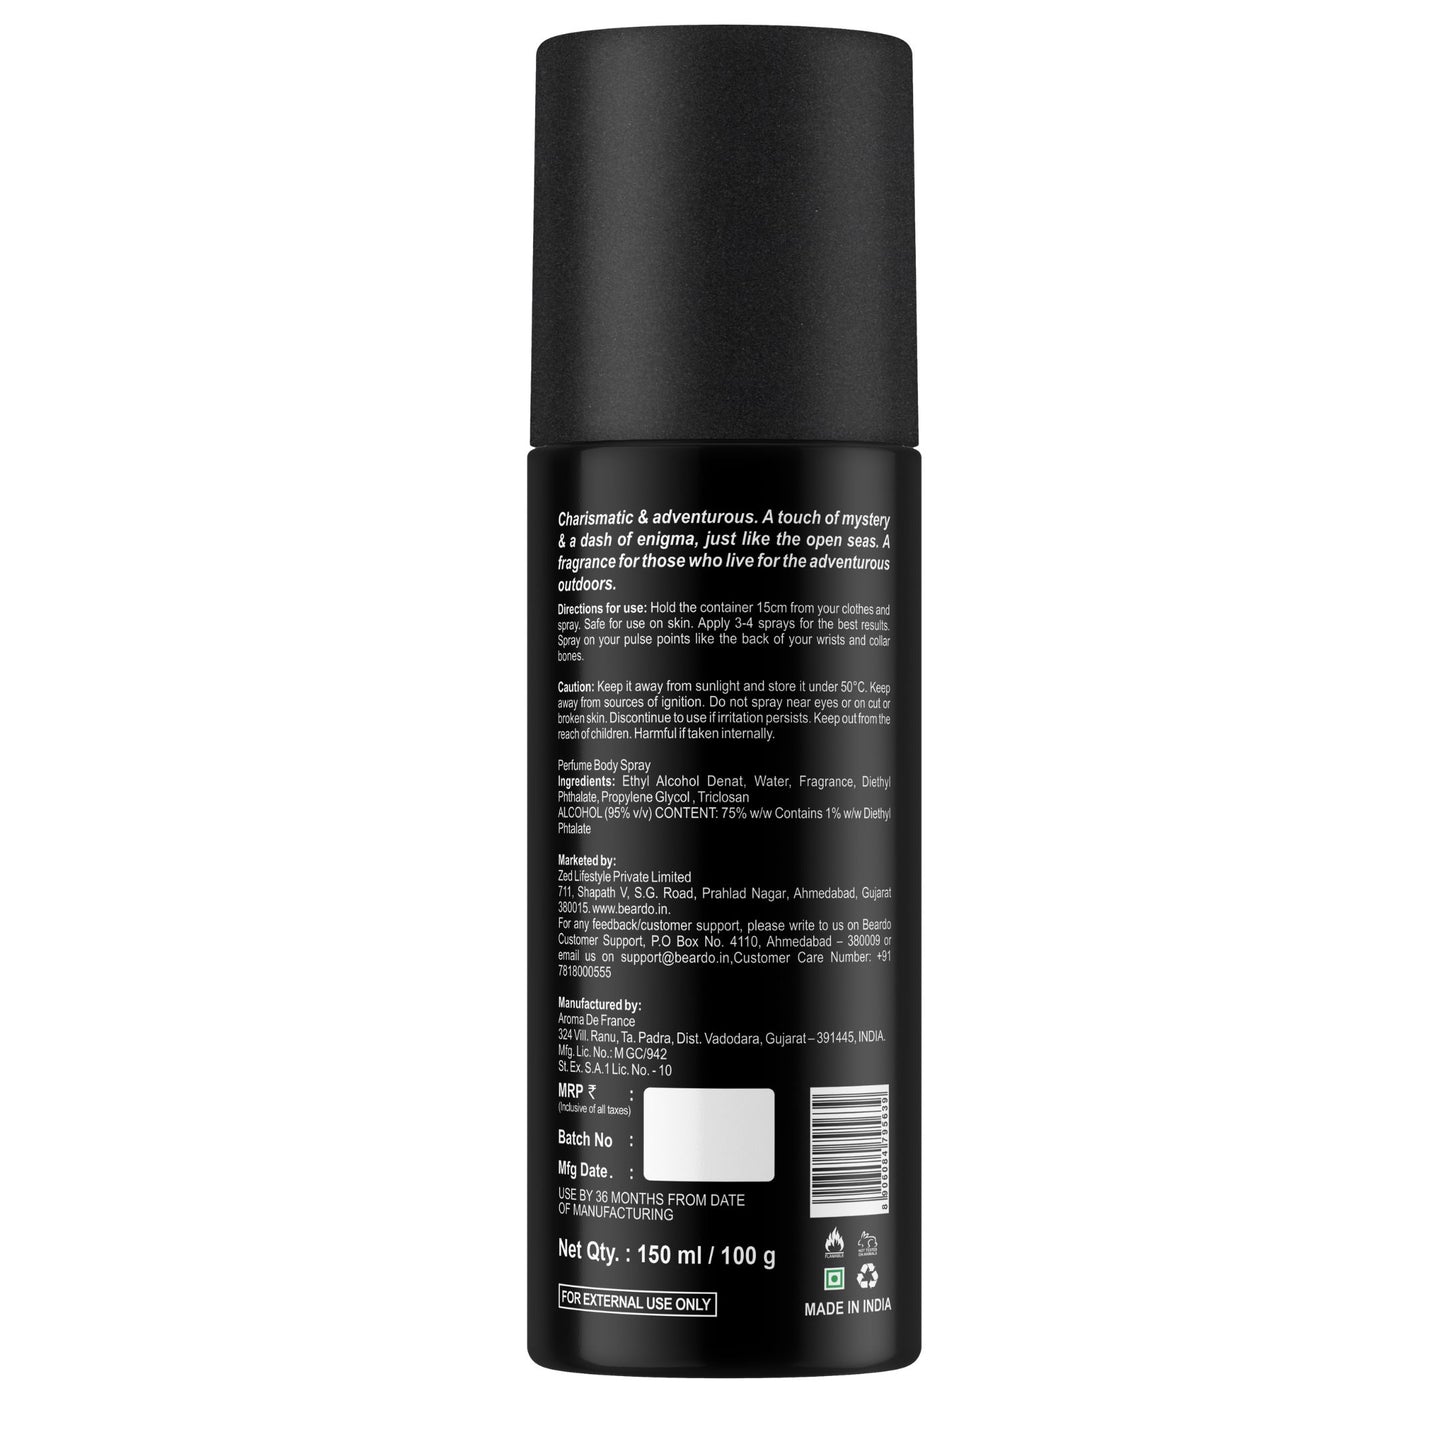 Beardo Mariner Perfume Deo Spray (150ml)